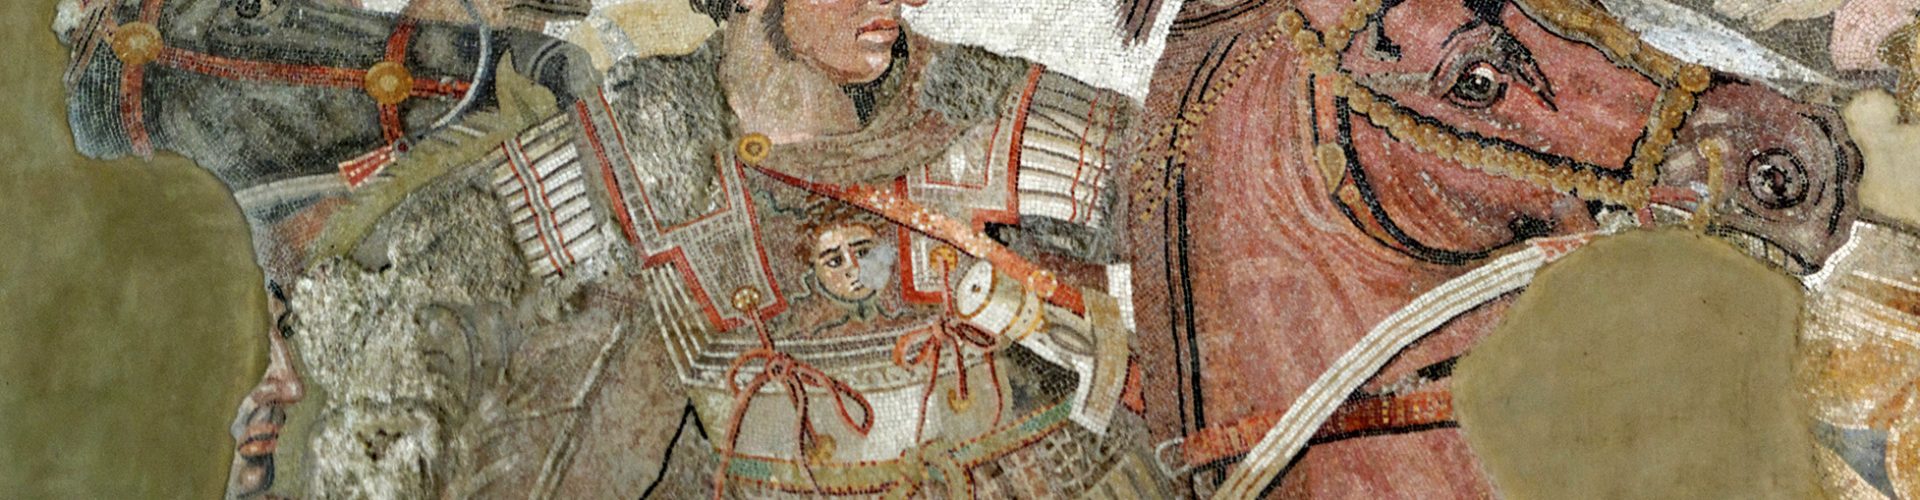 Aleksander Wielki w walce na mozaice z I w. p.n.e. przedstawiającej prawdopodobnie bitwę pod Issos